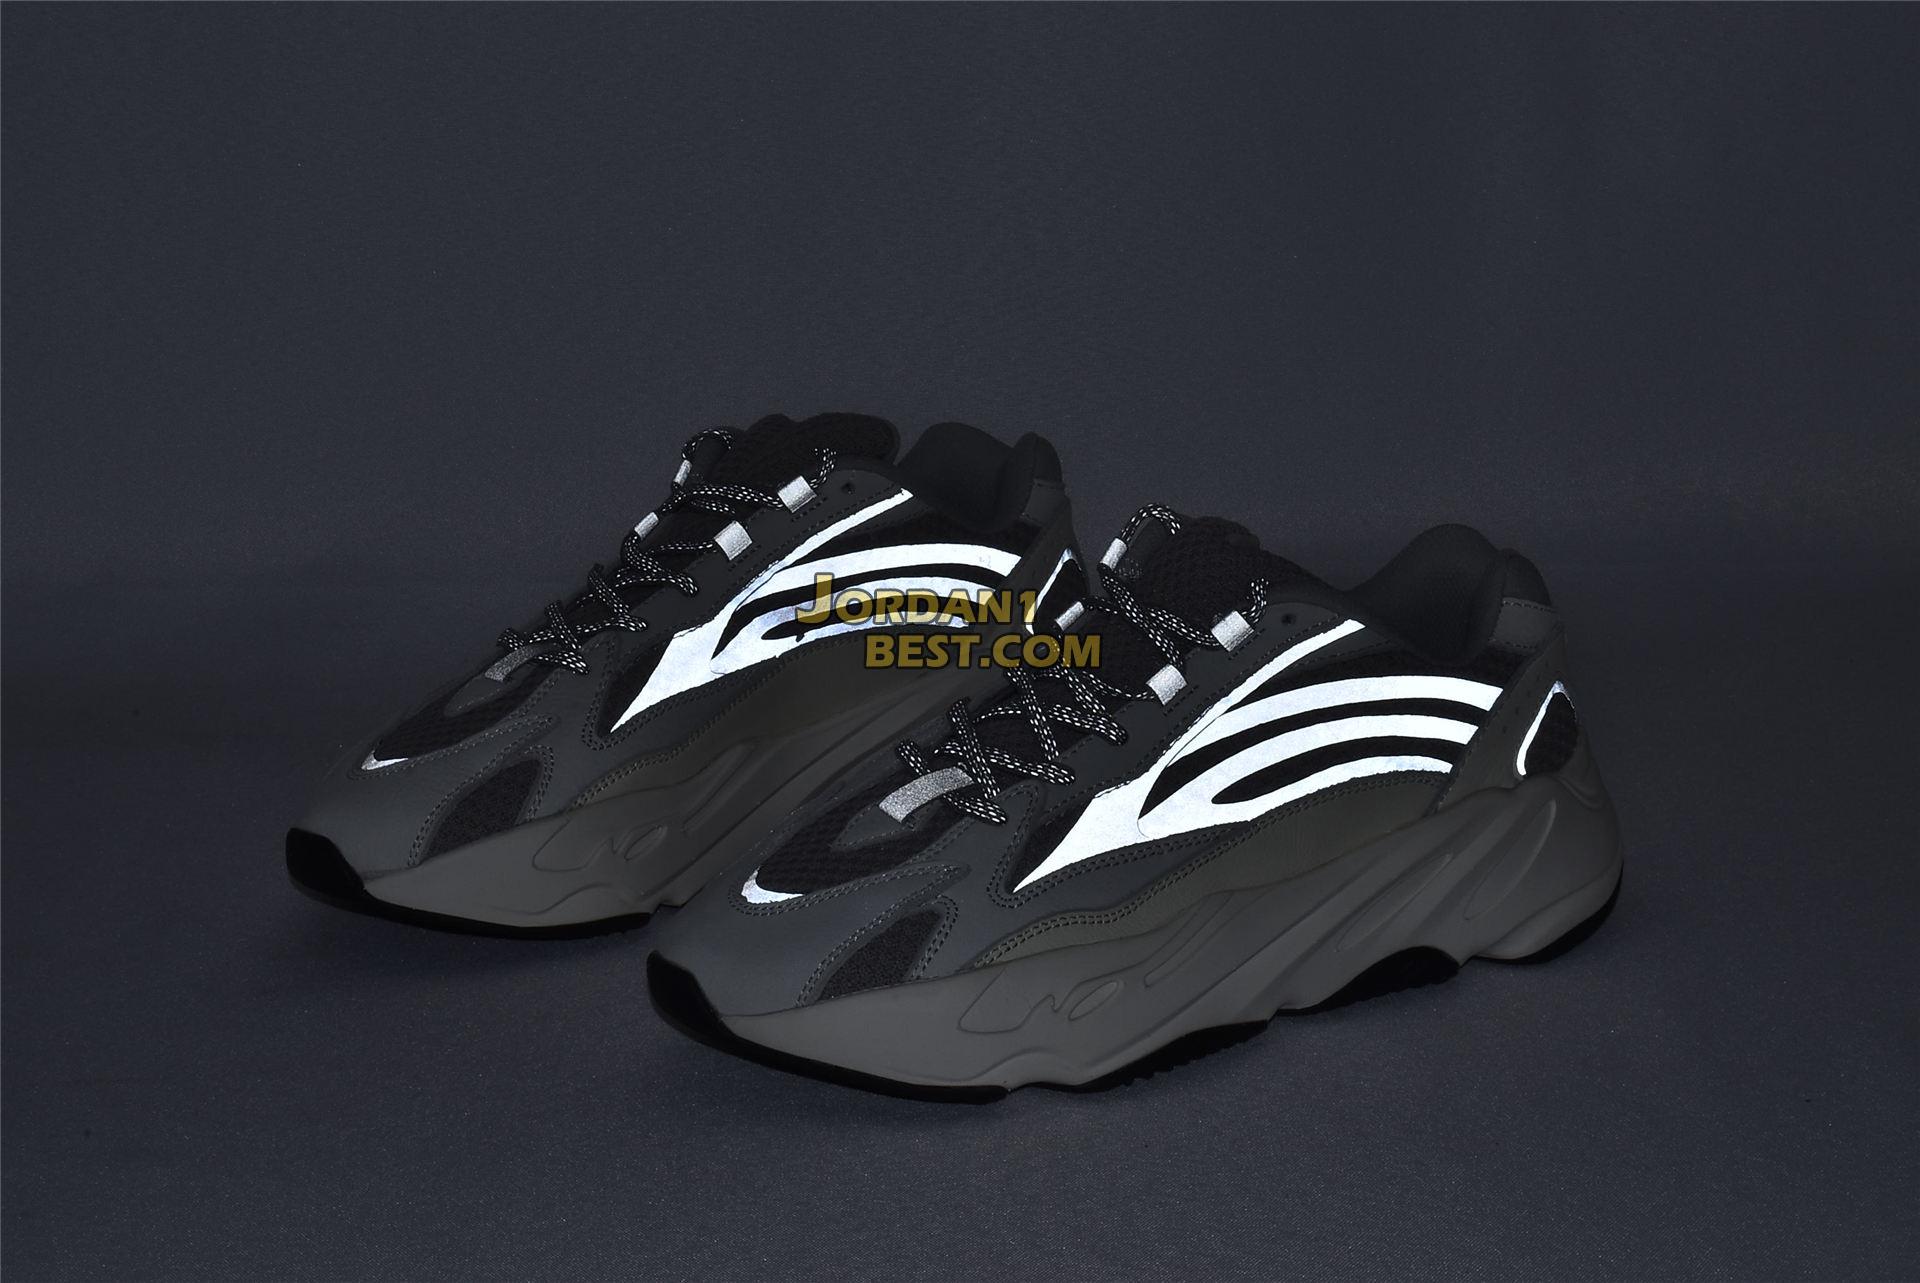 Adidas Yeezy Boost 700 V2 "Static" EF2829